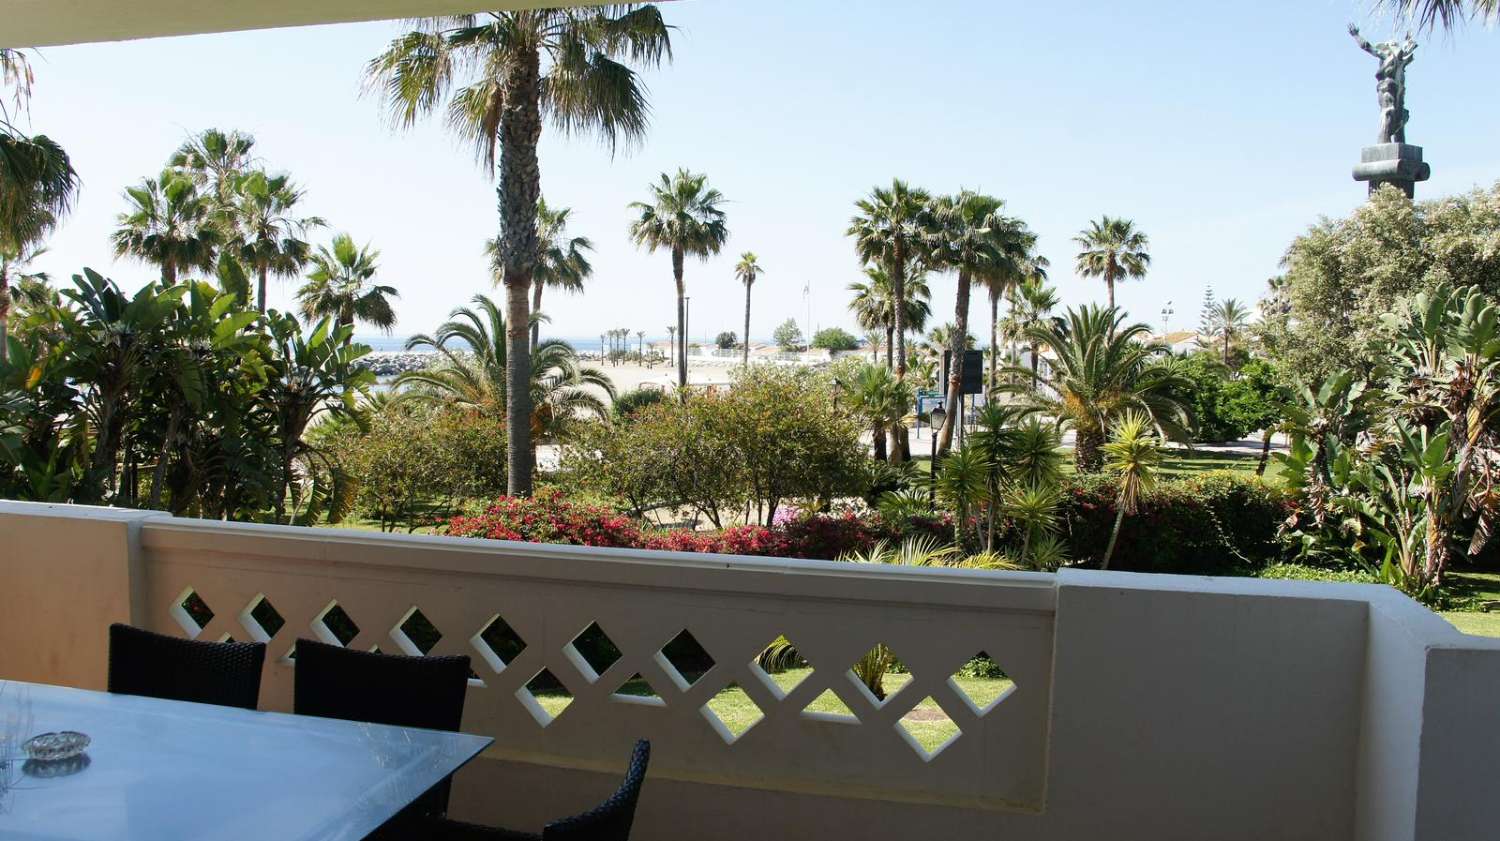 Ferienvermietung. Wohnung mit Blick auf das Meer. Puerto Banús, Marbella.